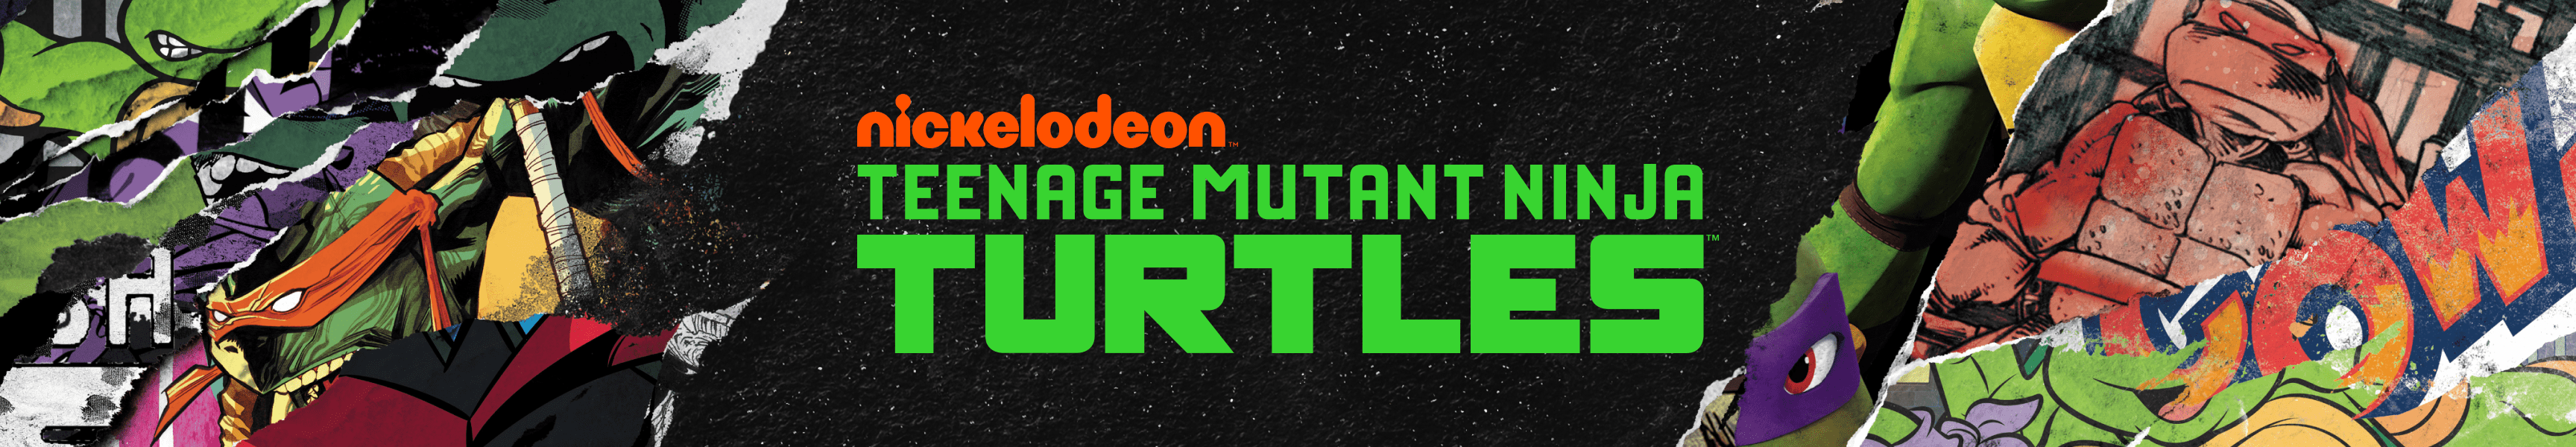 Teenage Mutant Ninja Turtles Camisetas